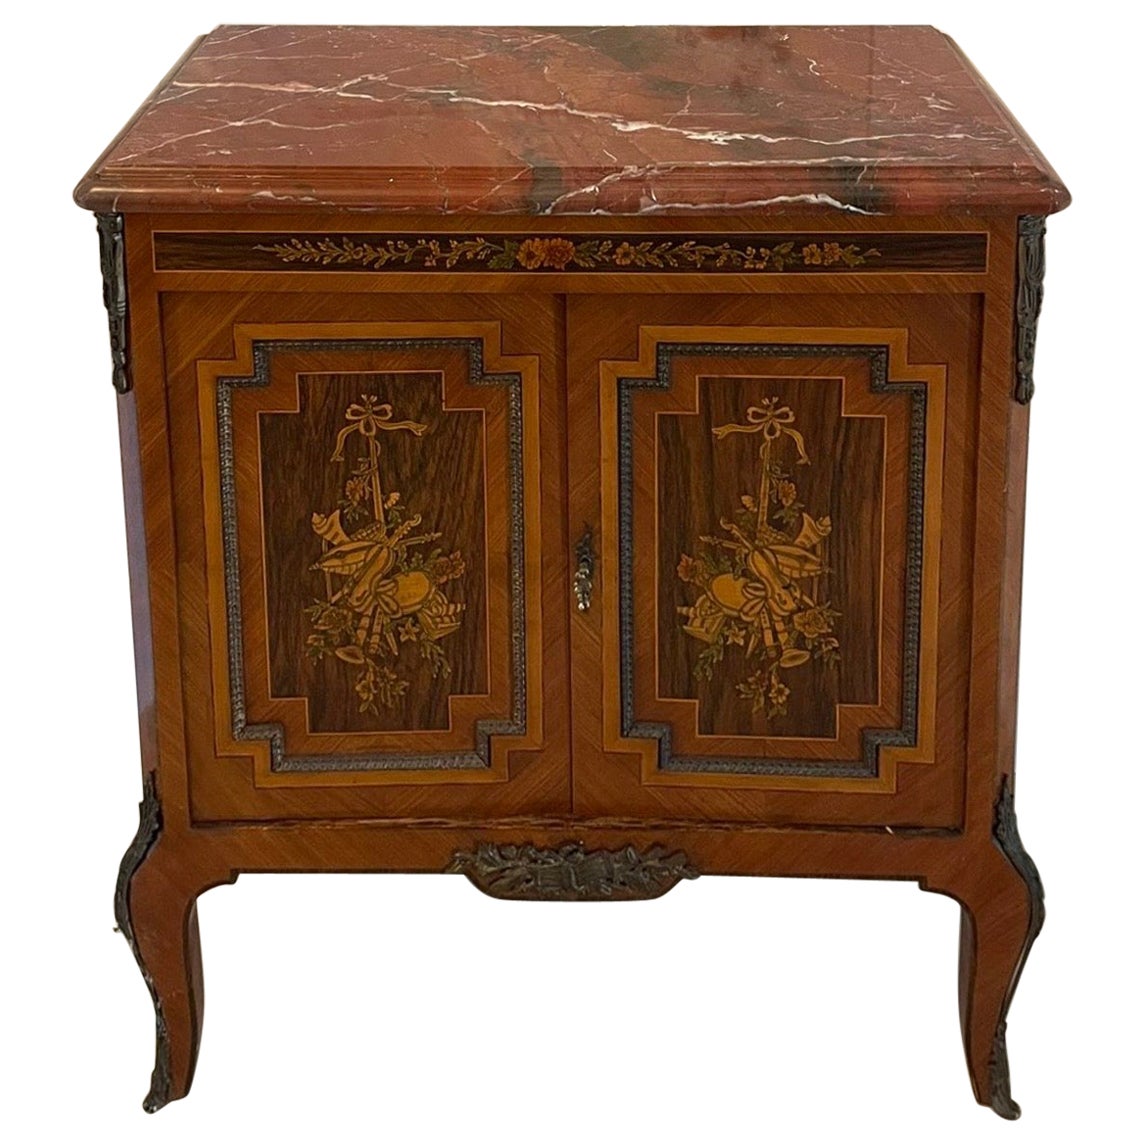 Ancienne armoire d'appoint en bois de rose et marqueterie française de qualité supérieure de l'époque édouardienne